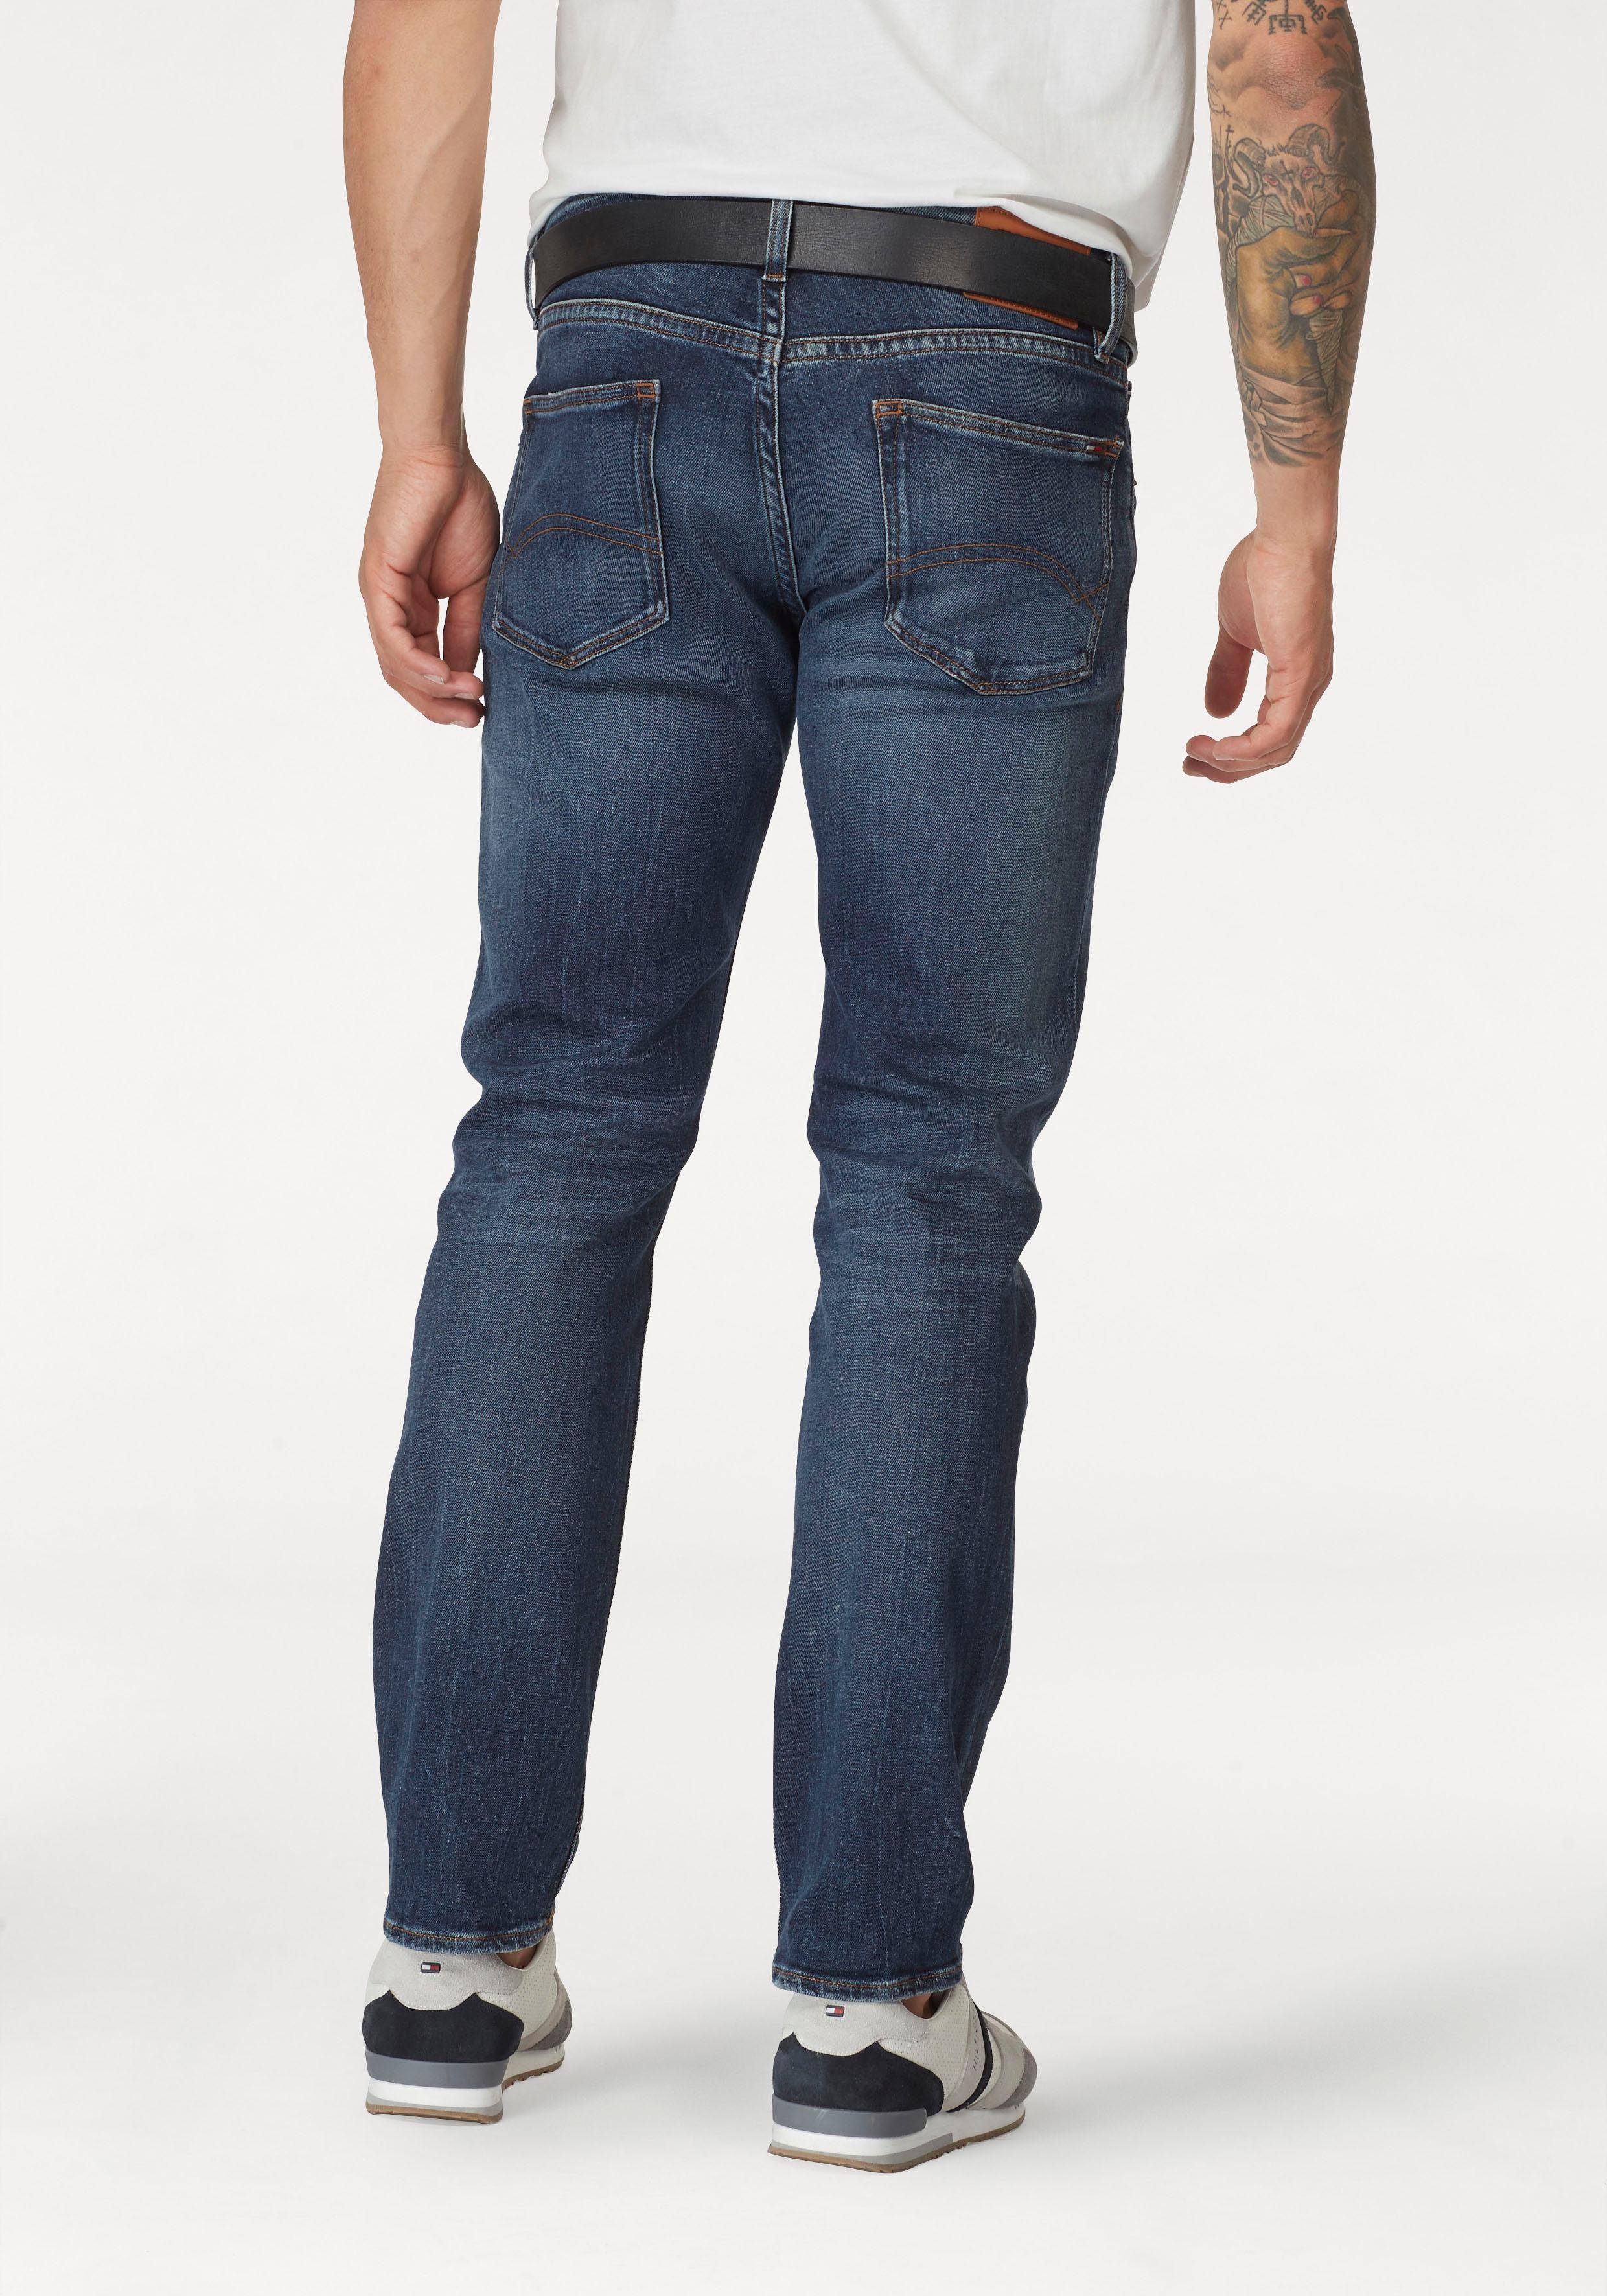 Tommy Hilfiger men’s jeans